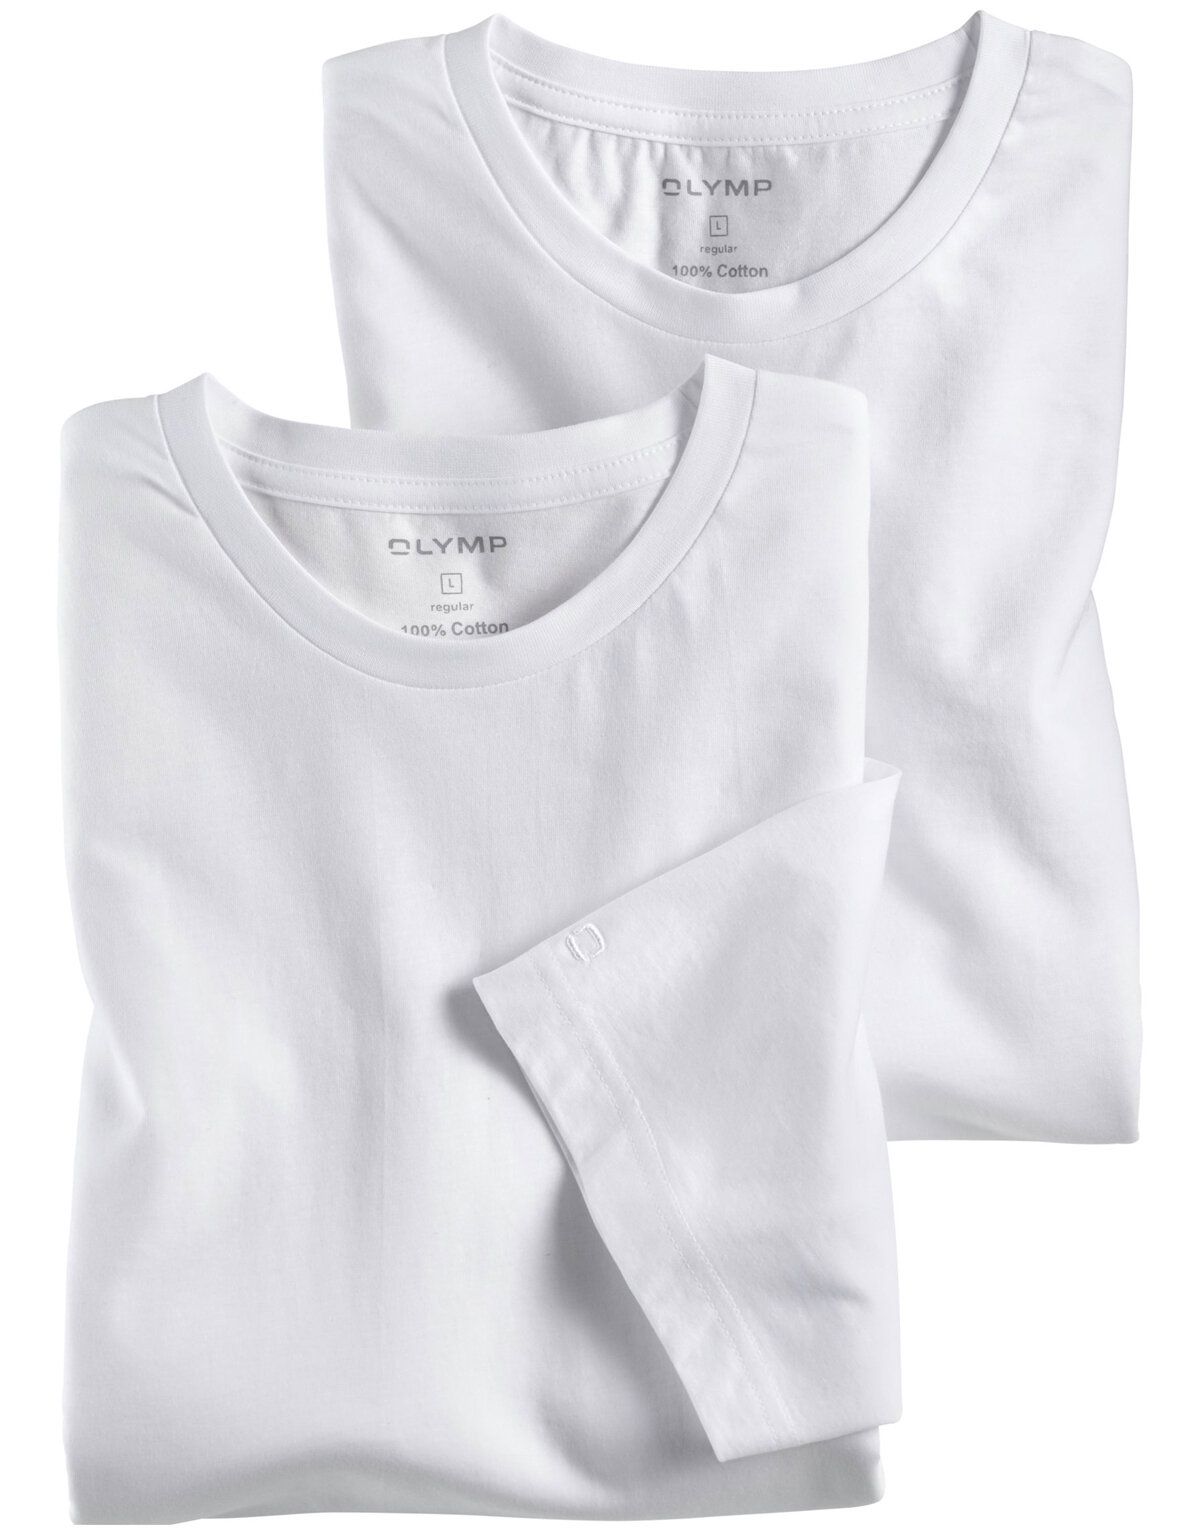 Бельевые футболки белые полуприталенные, 2 шт.[Белый]